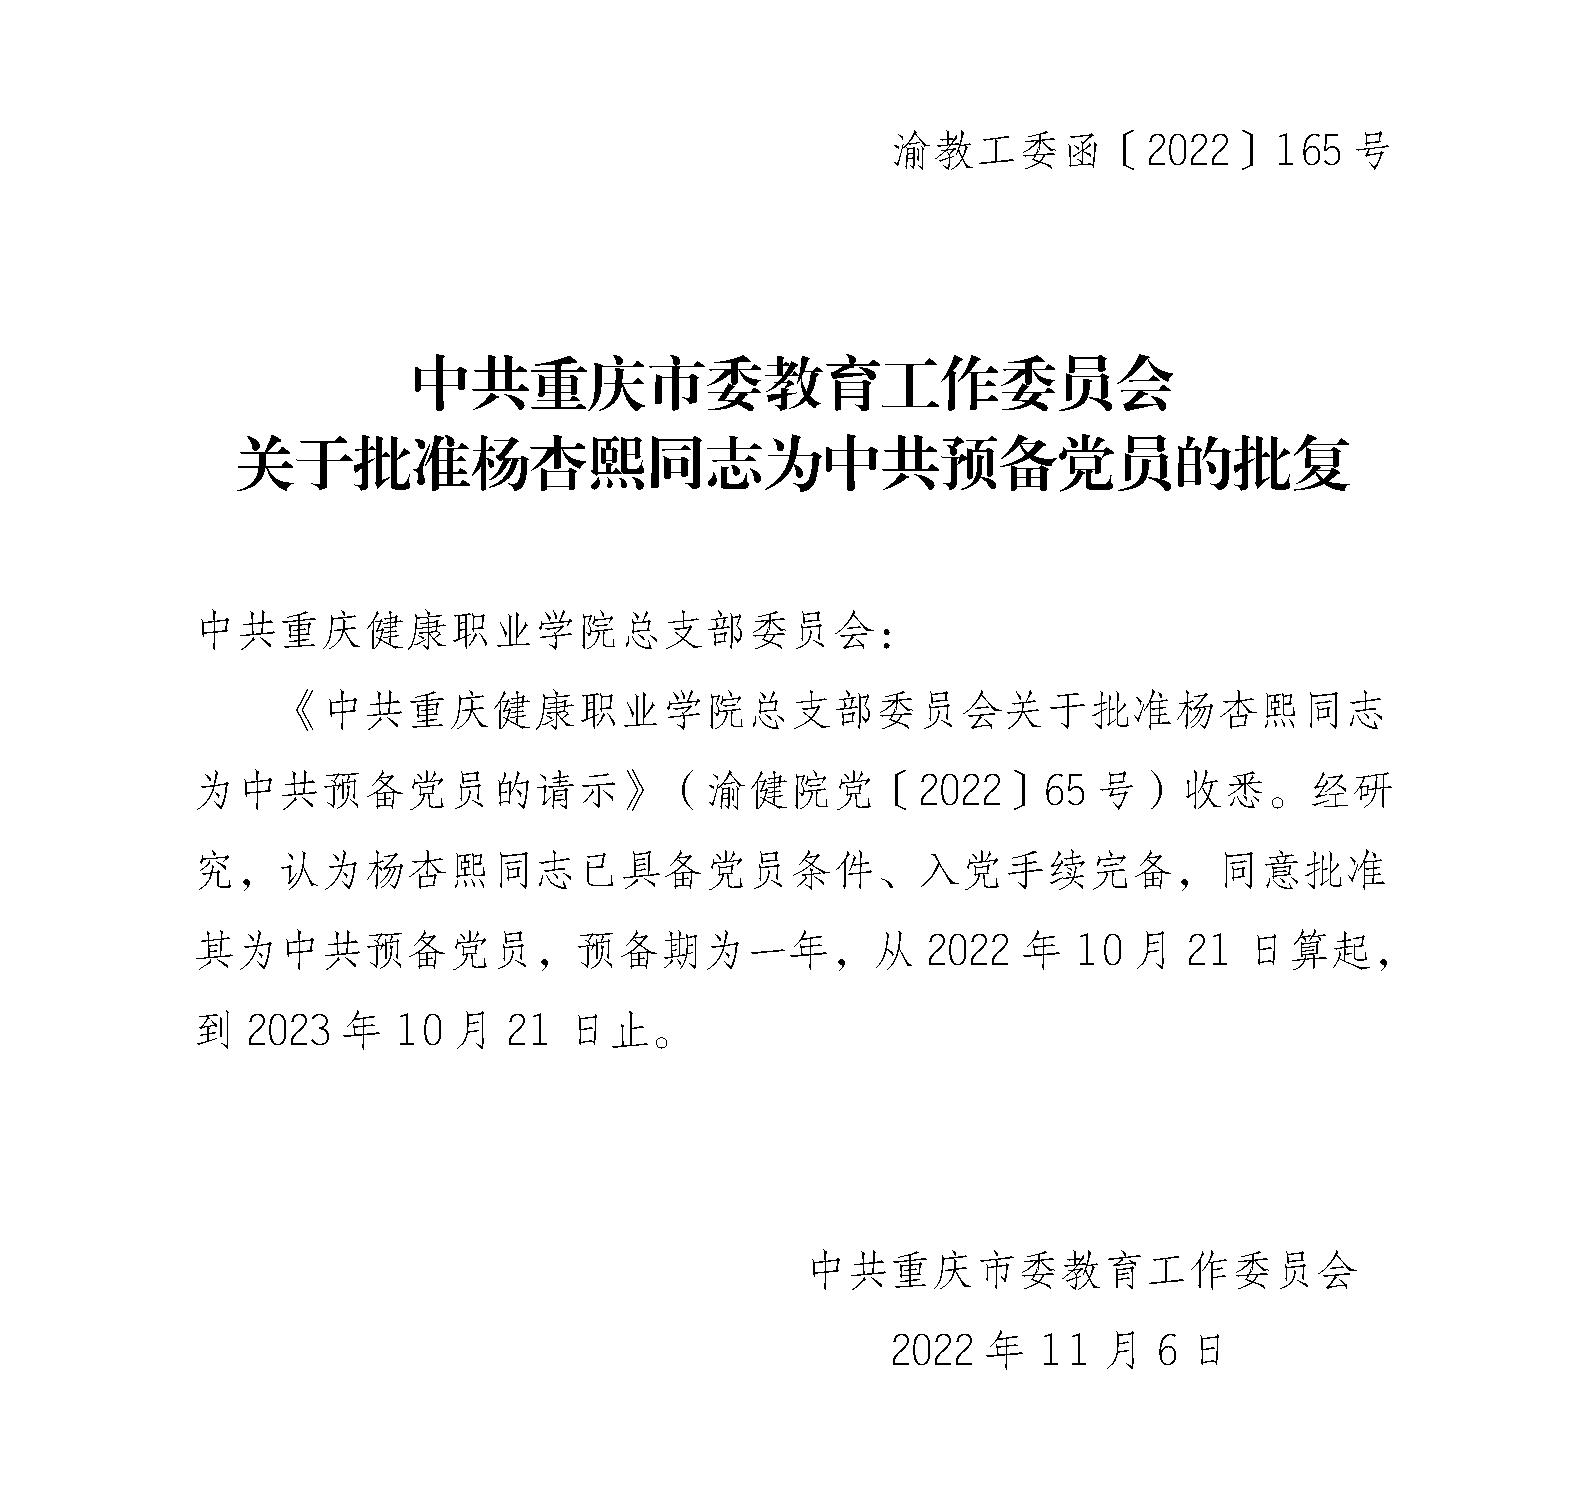 中共重庆市委教育工委关于批准杨杏熙同志为中共预备党员的批复_01.jpg